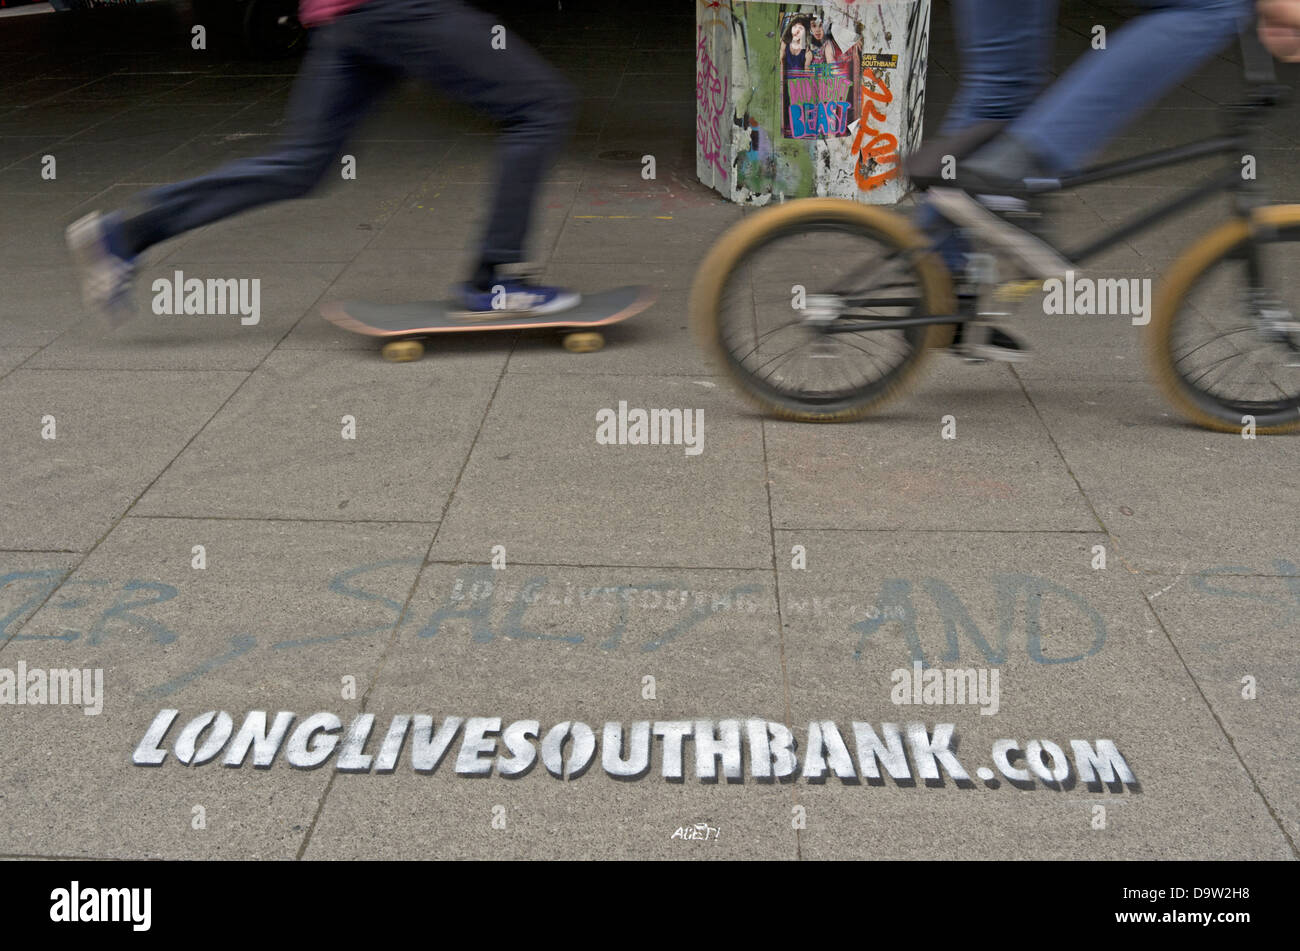 Un guidatore di skateboard e BMXer ride passato uno stencil promuovendo la lunga vita a South Bank skate park a Londra. Foto Stock